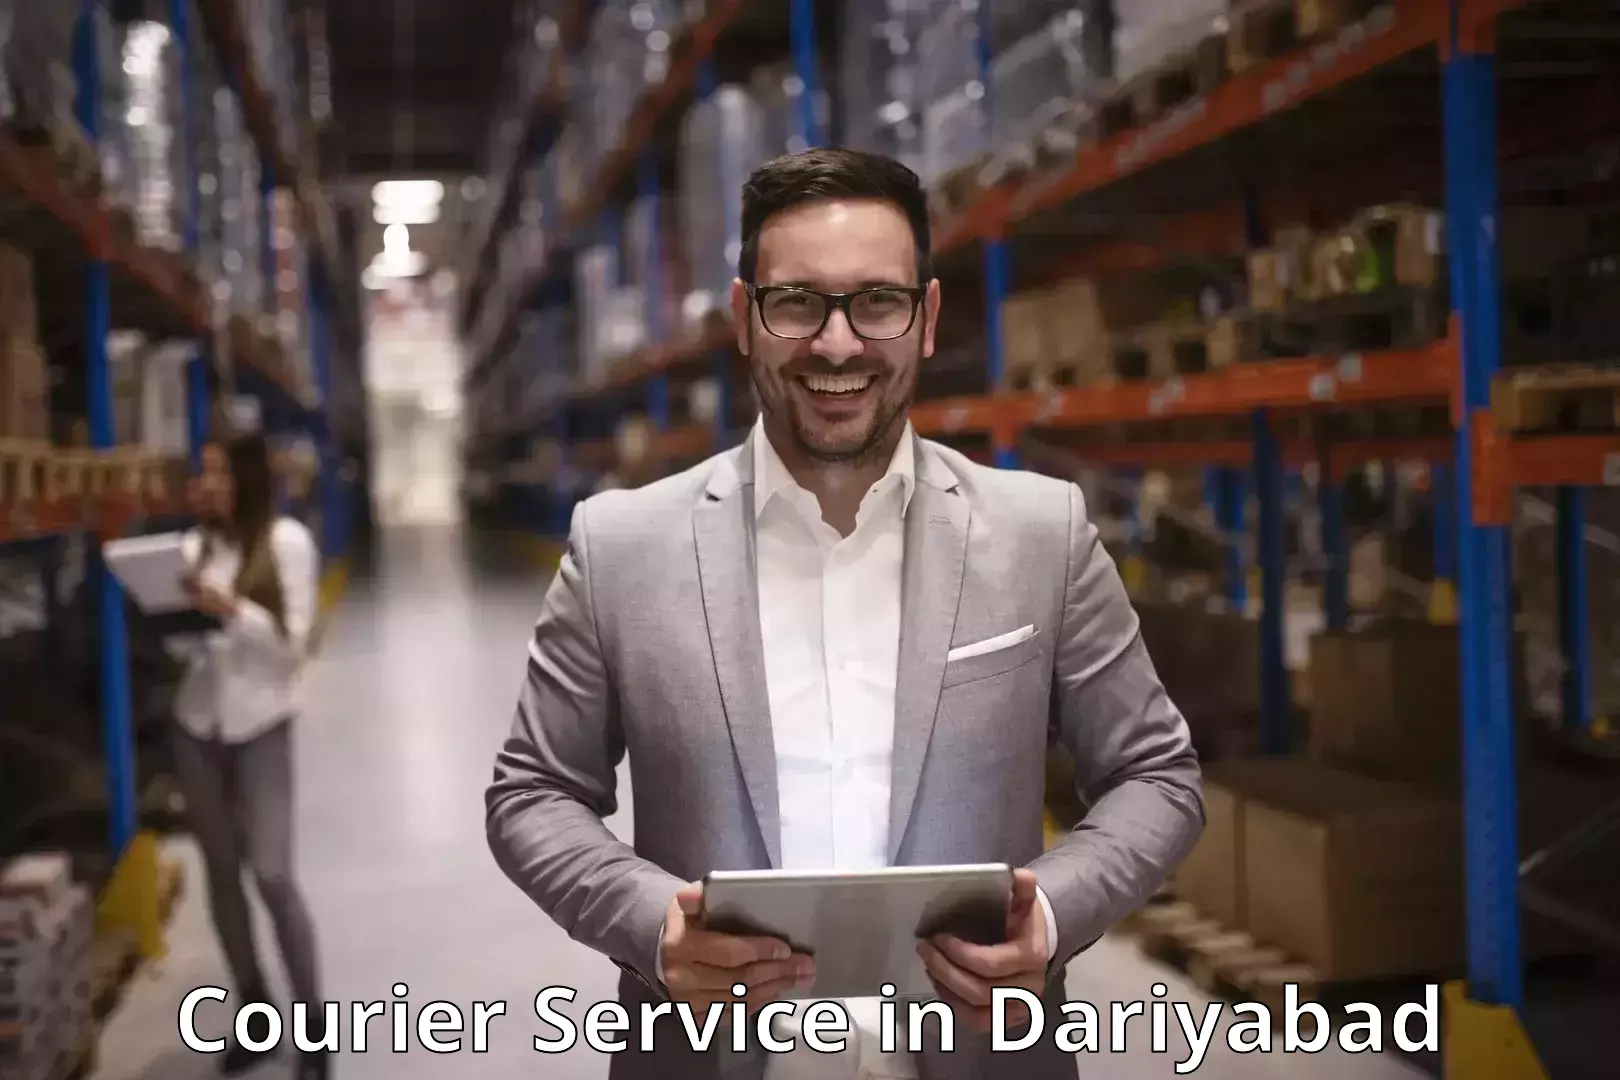 Innovative logistics solutions in Dariyabad